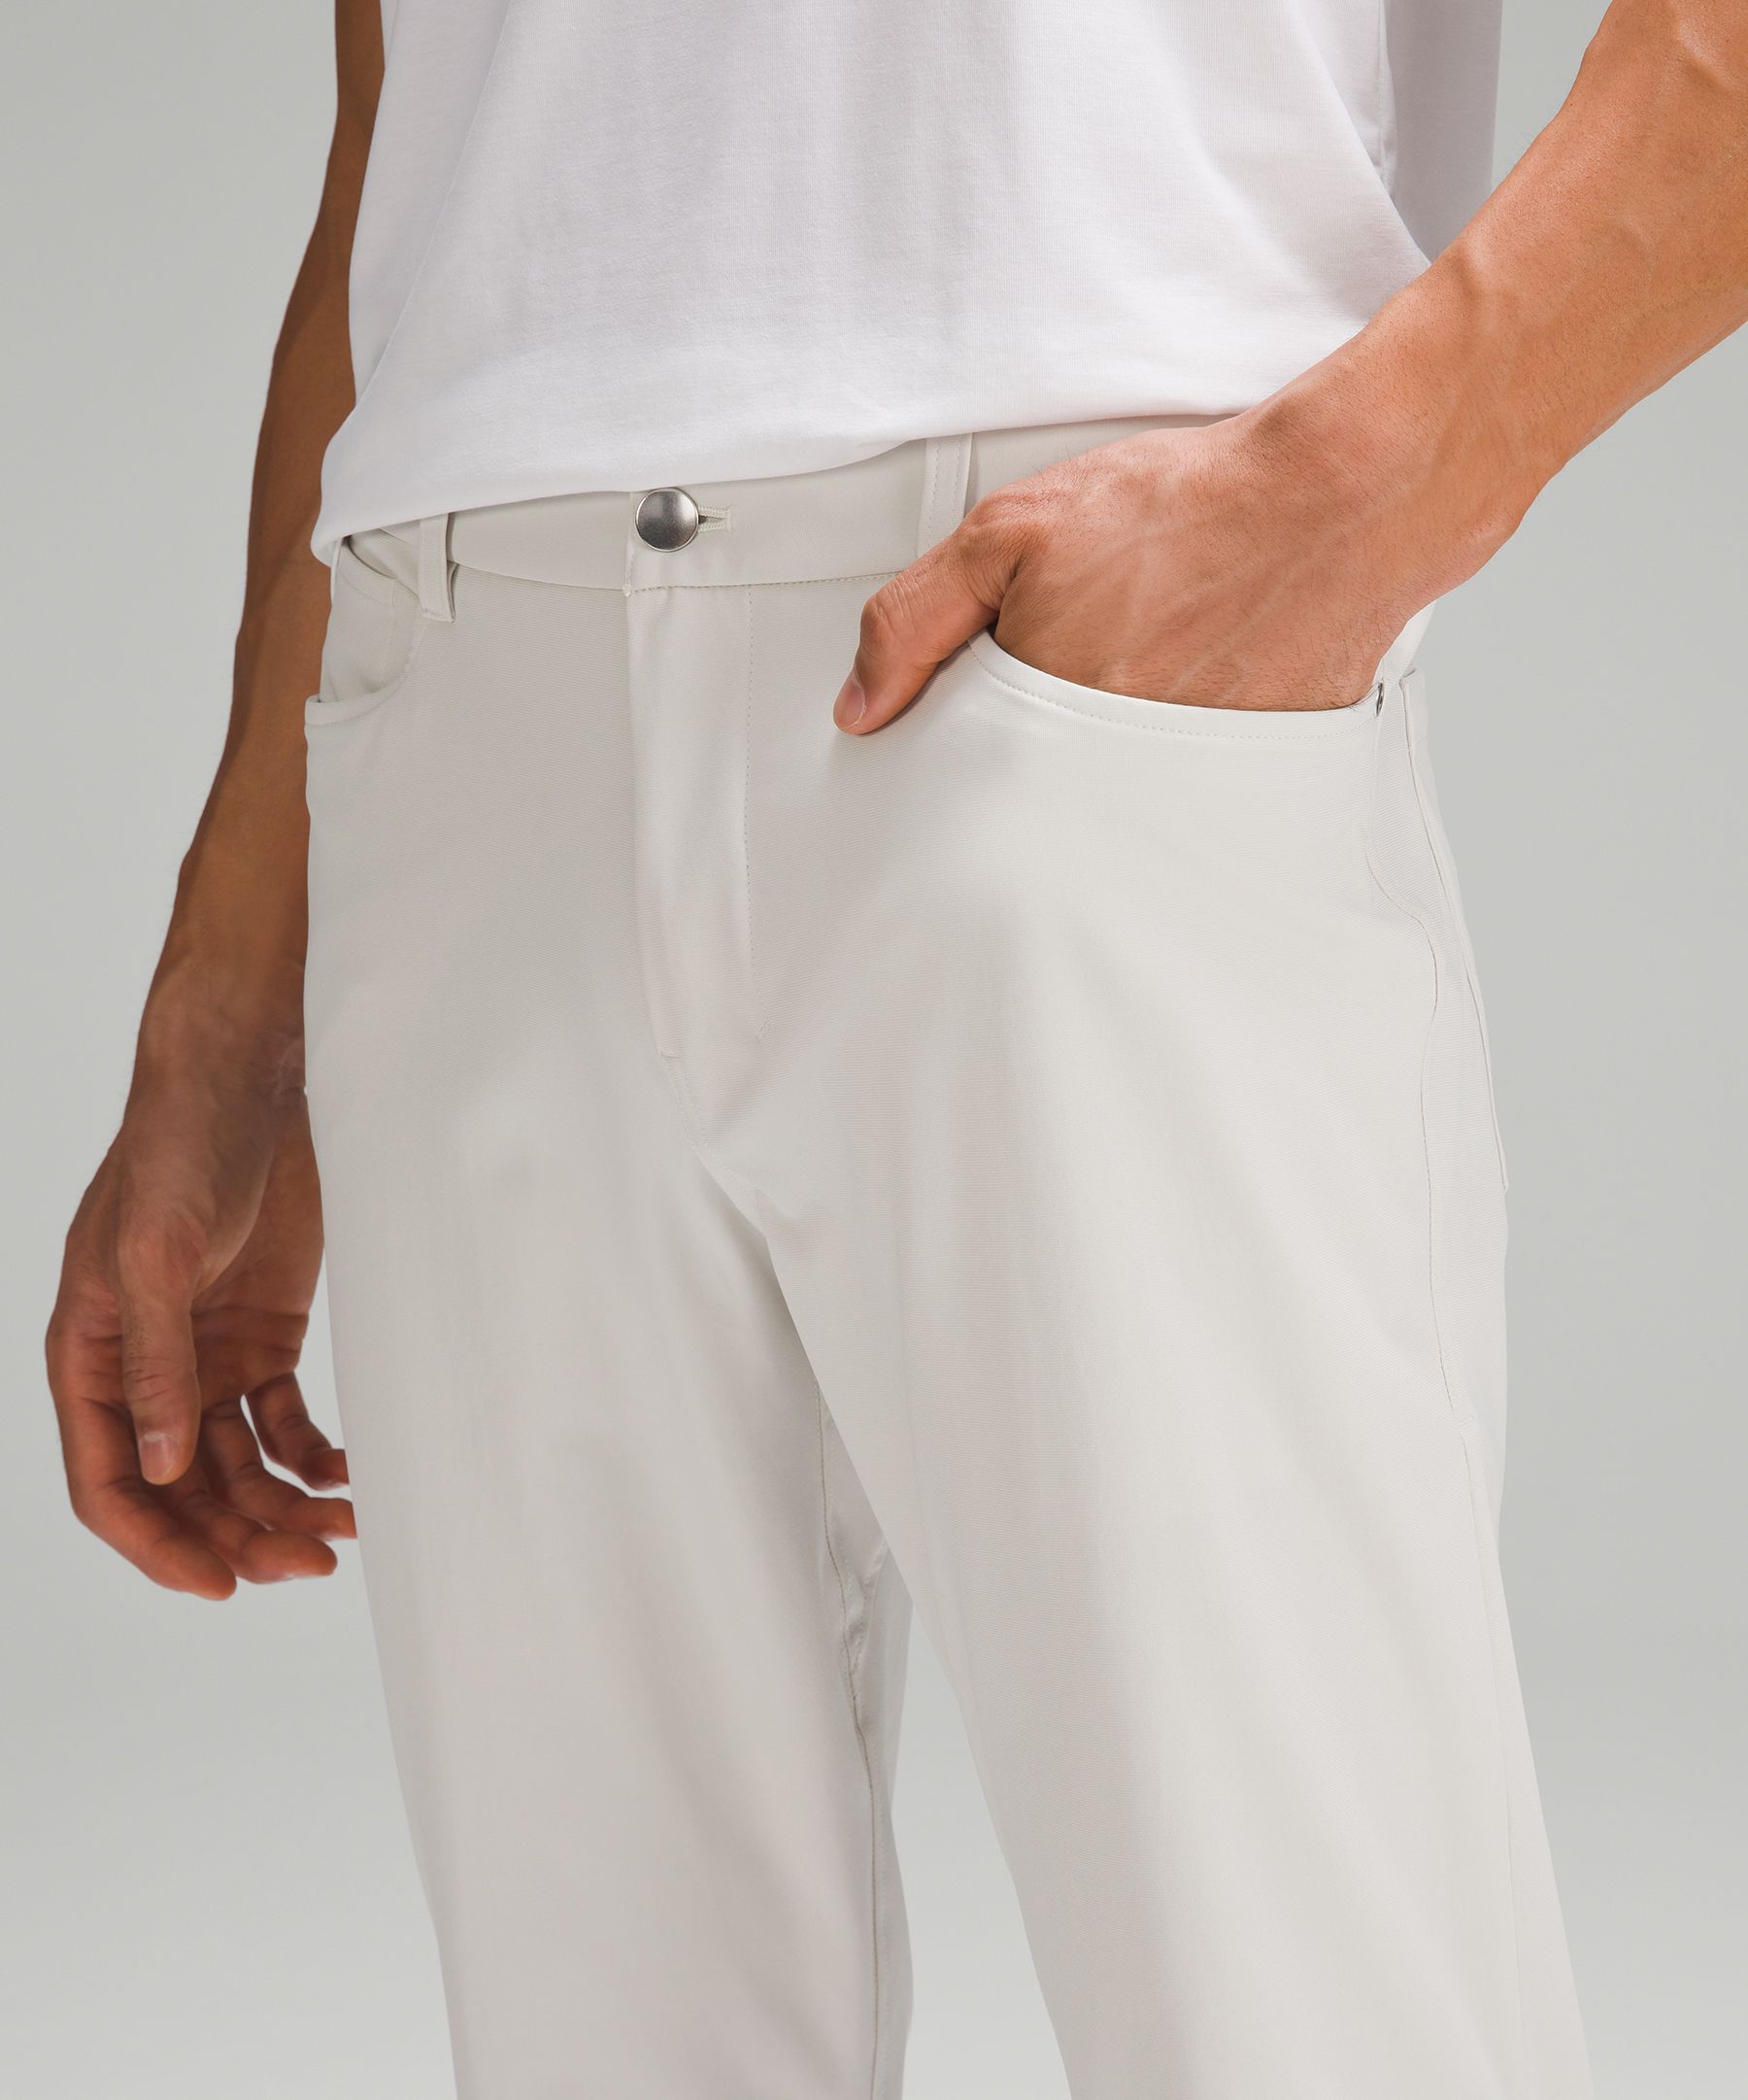 ABC Slim-Fit 5 Pocket Pant 34 *Warpstreme, Men's Trousers